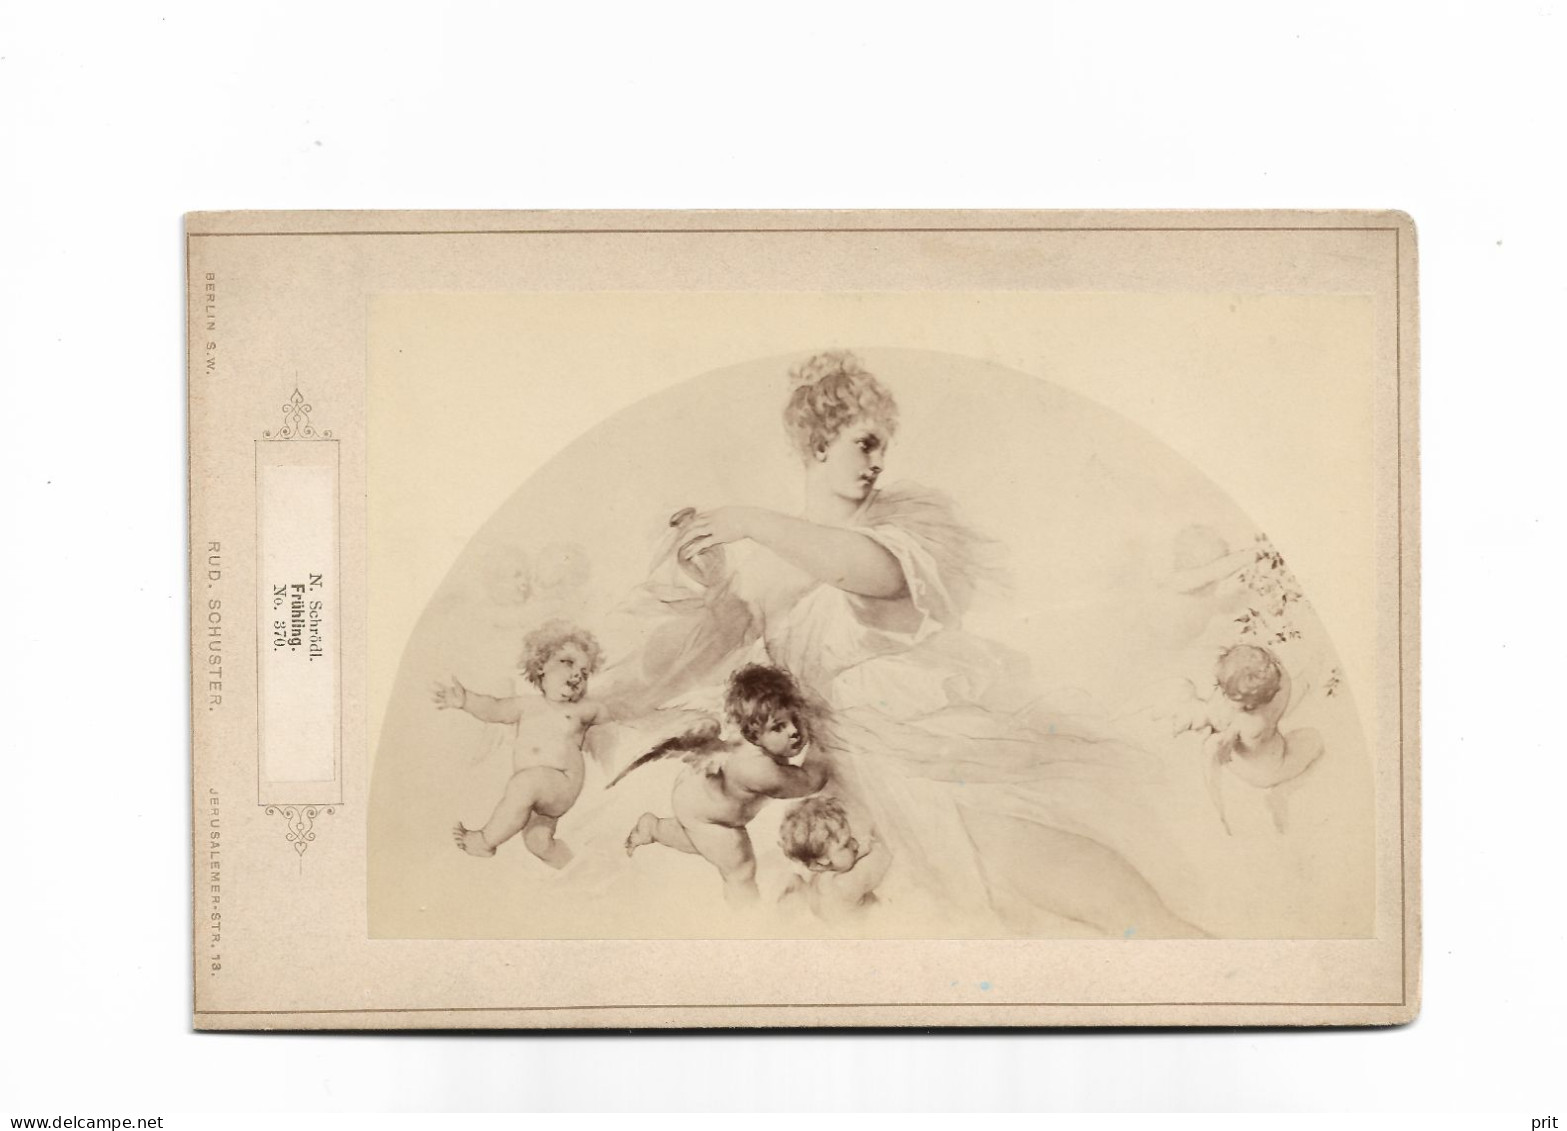 Frühling Spring, N.Schrödl No 370, Angels 1890-1900s Photogravure On Cardboard. Publisher Rud.Schuster, Berlin Germany - Estampes & Gravures